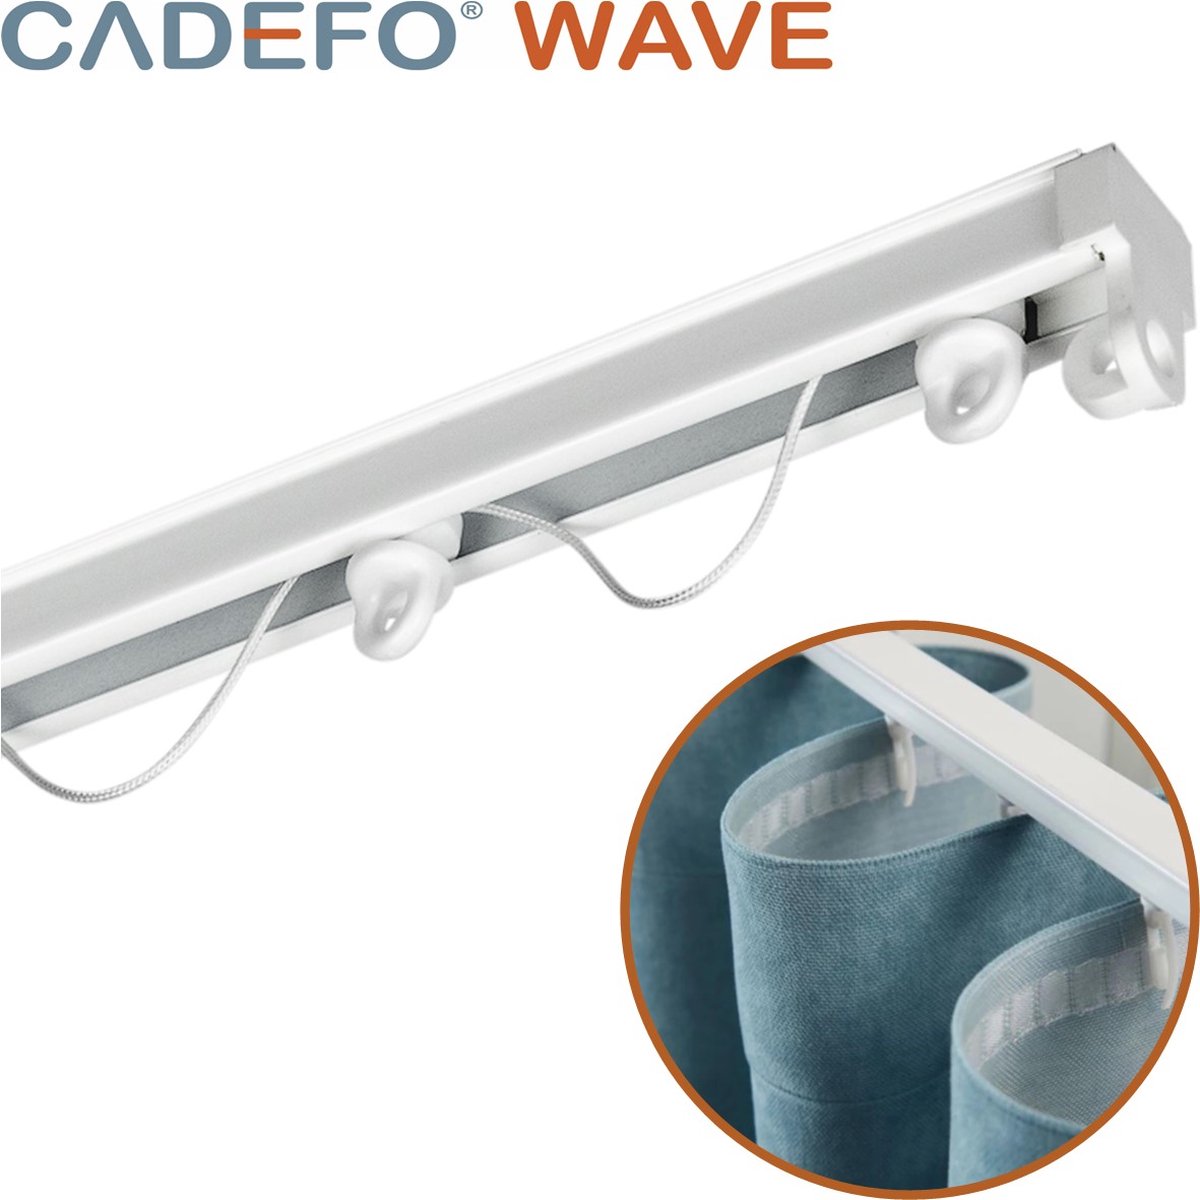 CADEFO WAVE (401 - 450 cm) Gordijnrails - Compleet op maat! - UIT 1 STUK - Leverbaar tot 6 meter - Plafondbevestiging - Lengte 418 cm